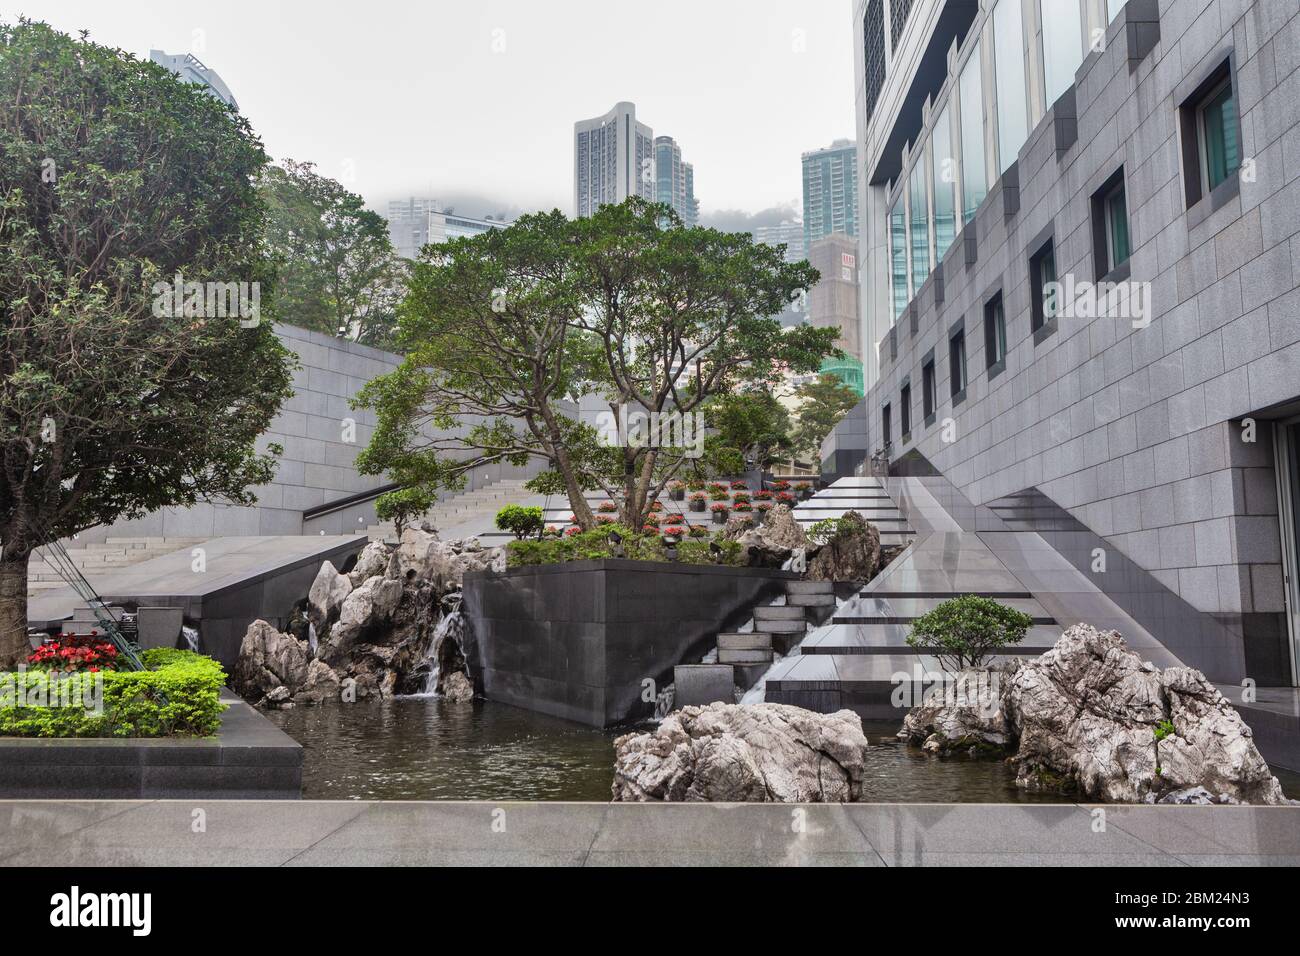 Moderne Architektur, Hong Kong, China Stockfoto